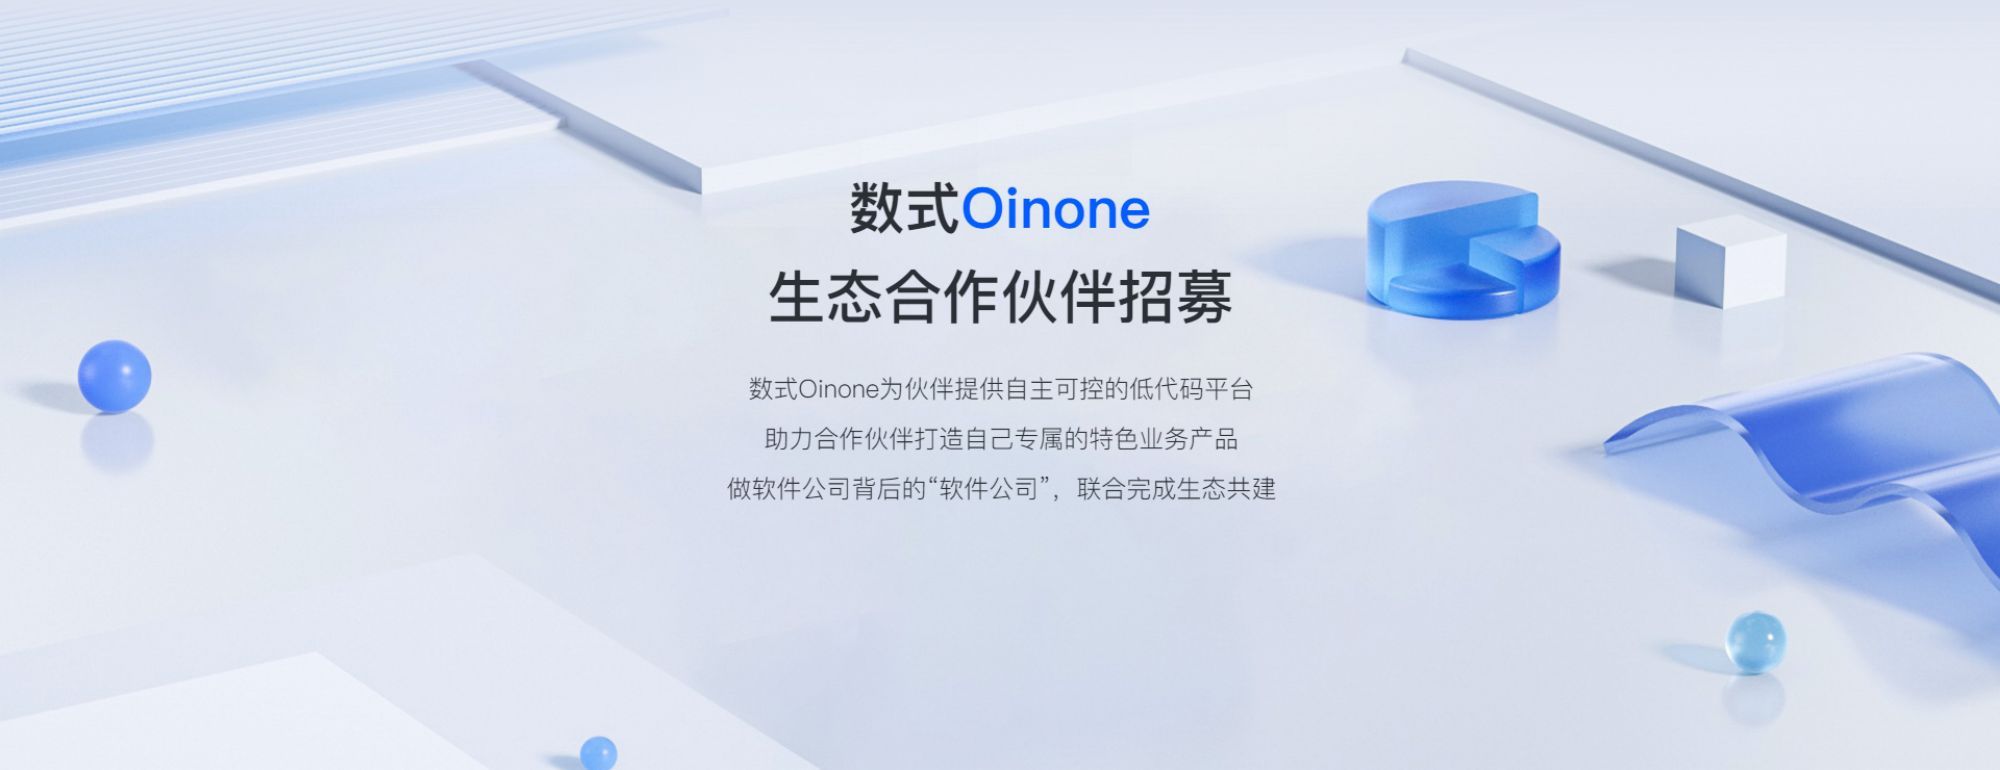 Oinone低代码开发平台